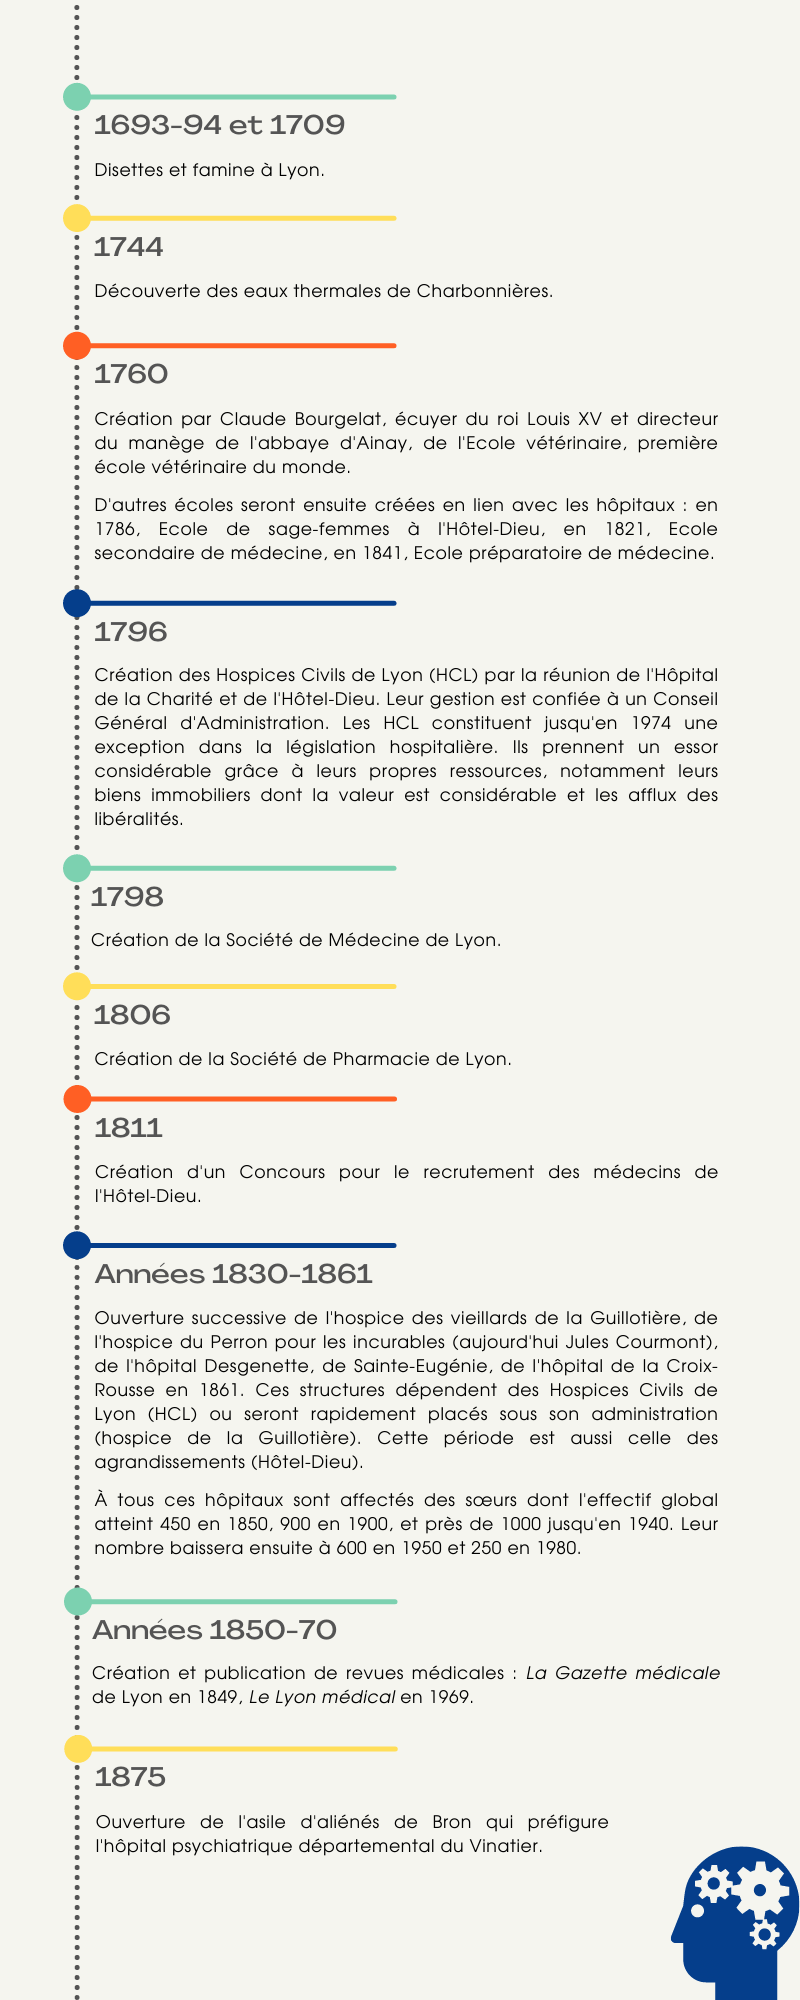 Chronologie de l'histoire de la santé à Lyon de 1693 à 1875.